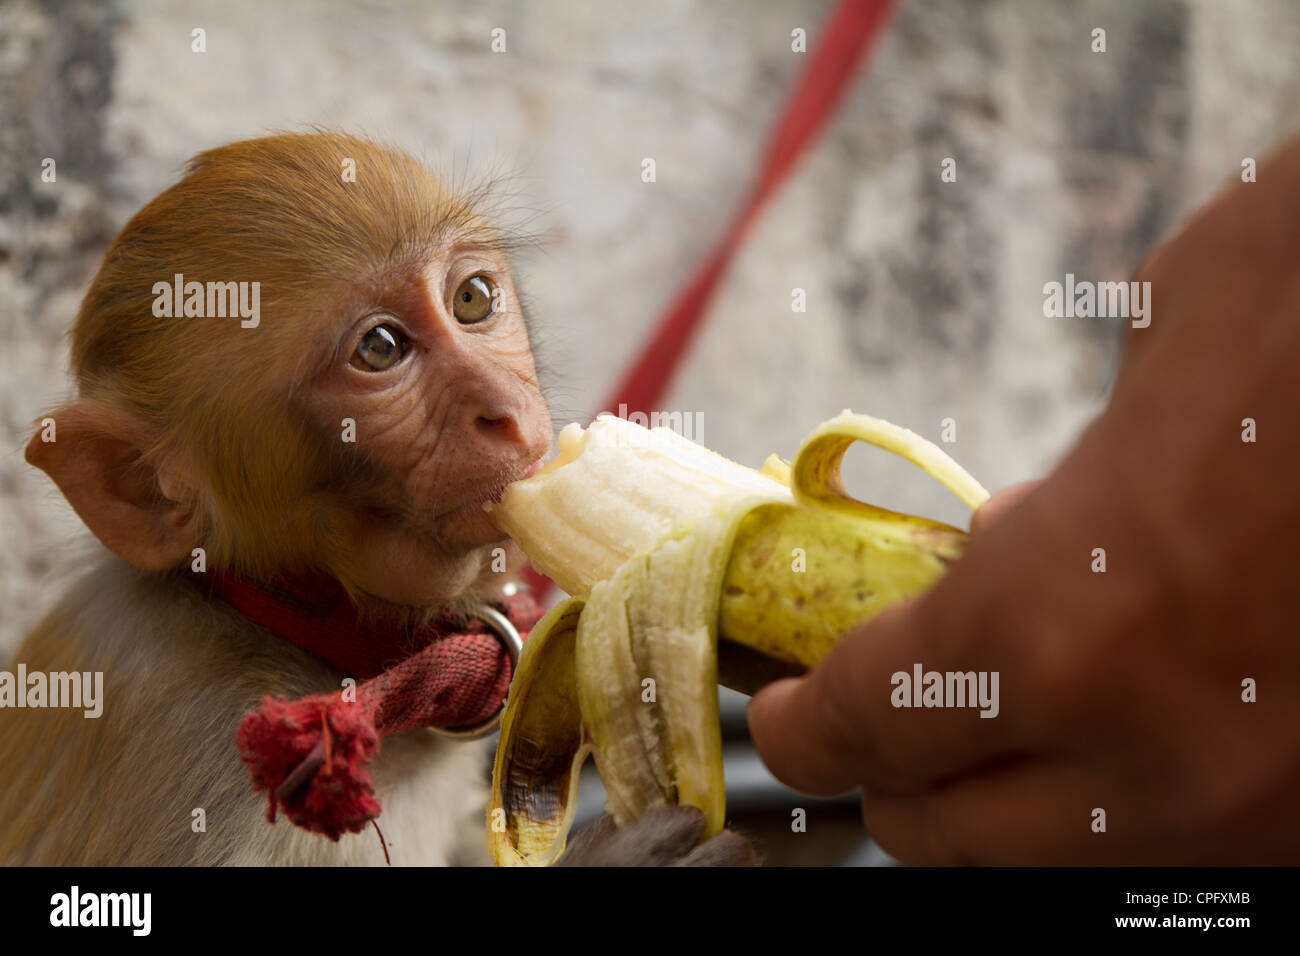 Обезьяна подавилася бананом. Обезьяна с бананом. Шимпанзе с бананом. Обезьяна кушает. Обезьянка ест банан.